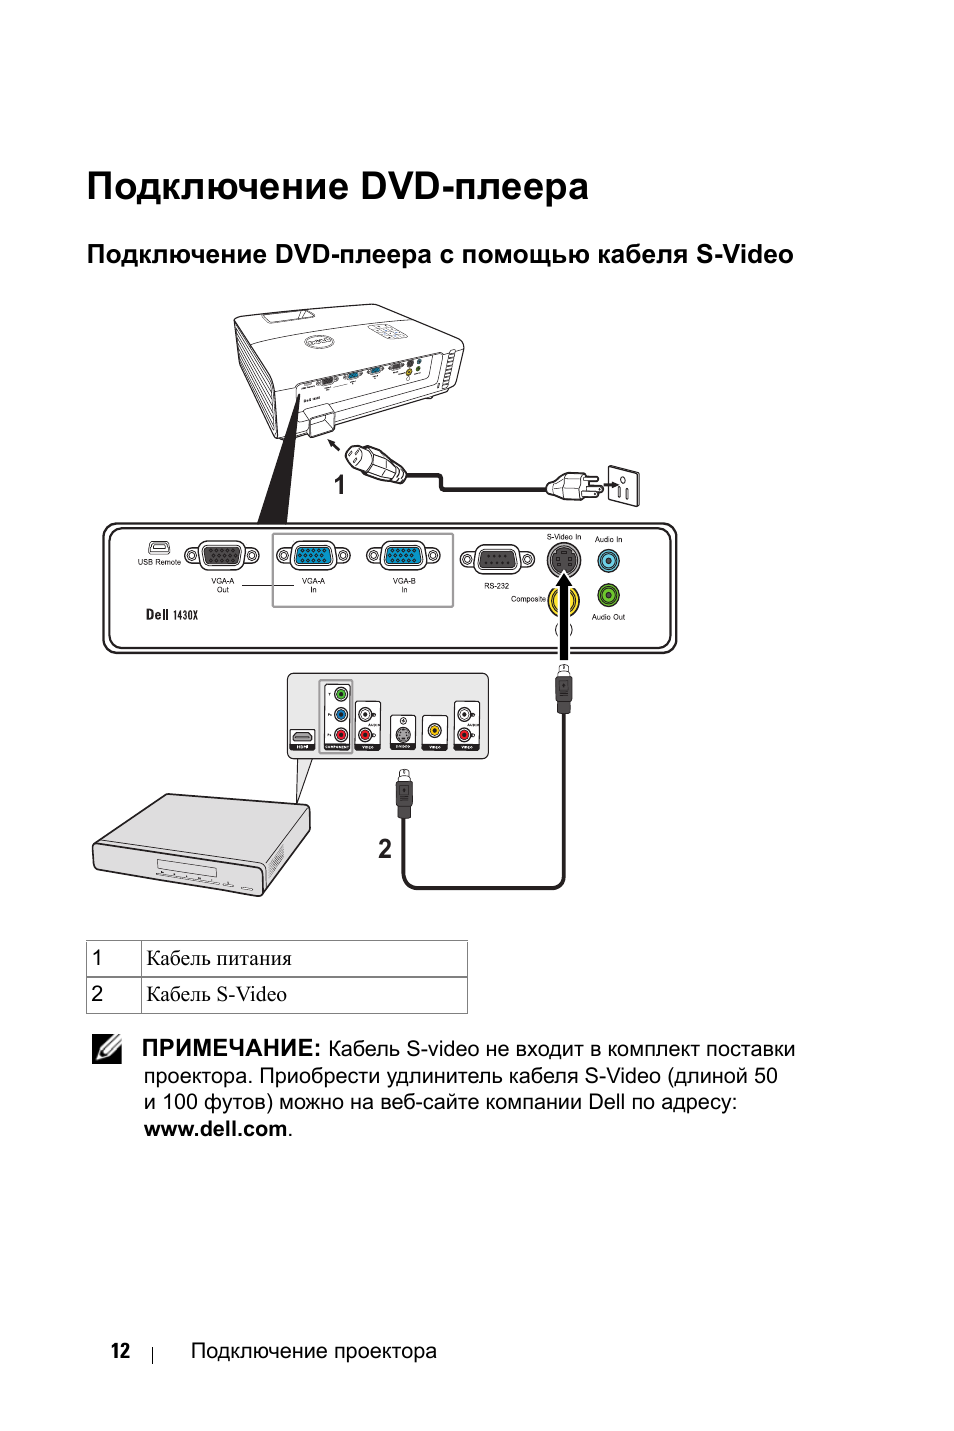 Как подключить dvd-плеер к телевизору: пошаговая инструкция и возможные сложности